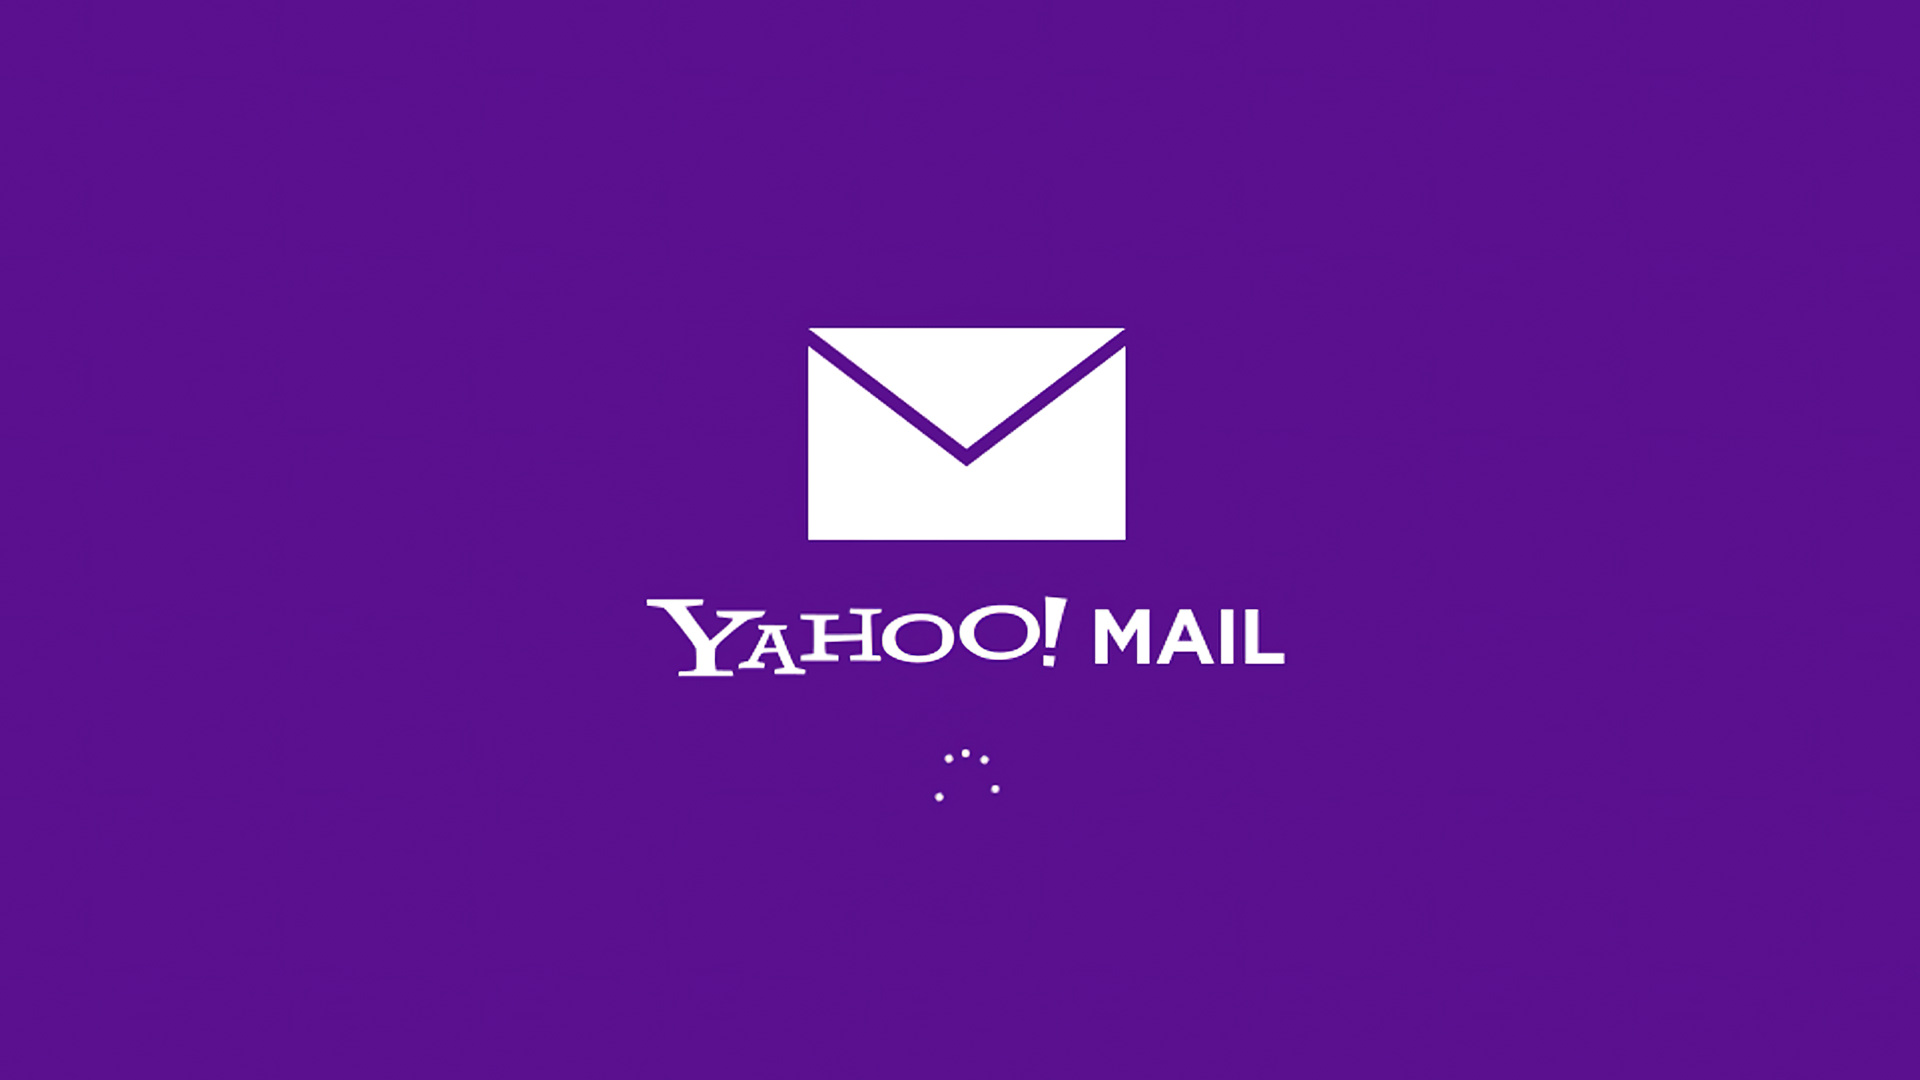 Yahoo Mail werkt niet: hoe kan ik dit snel oplossen?